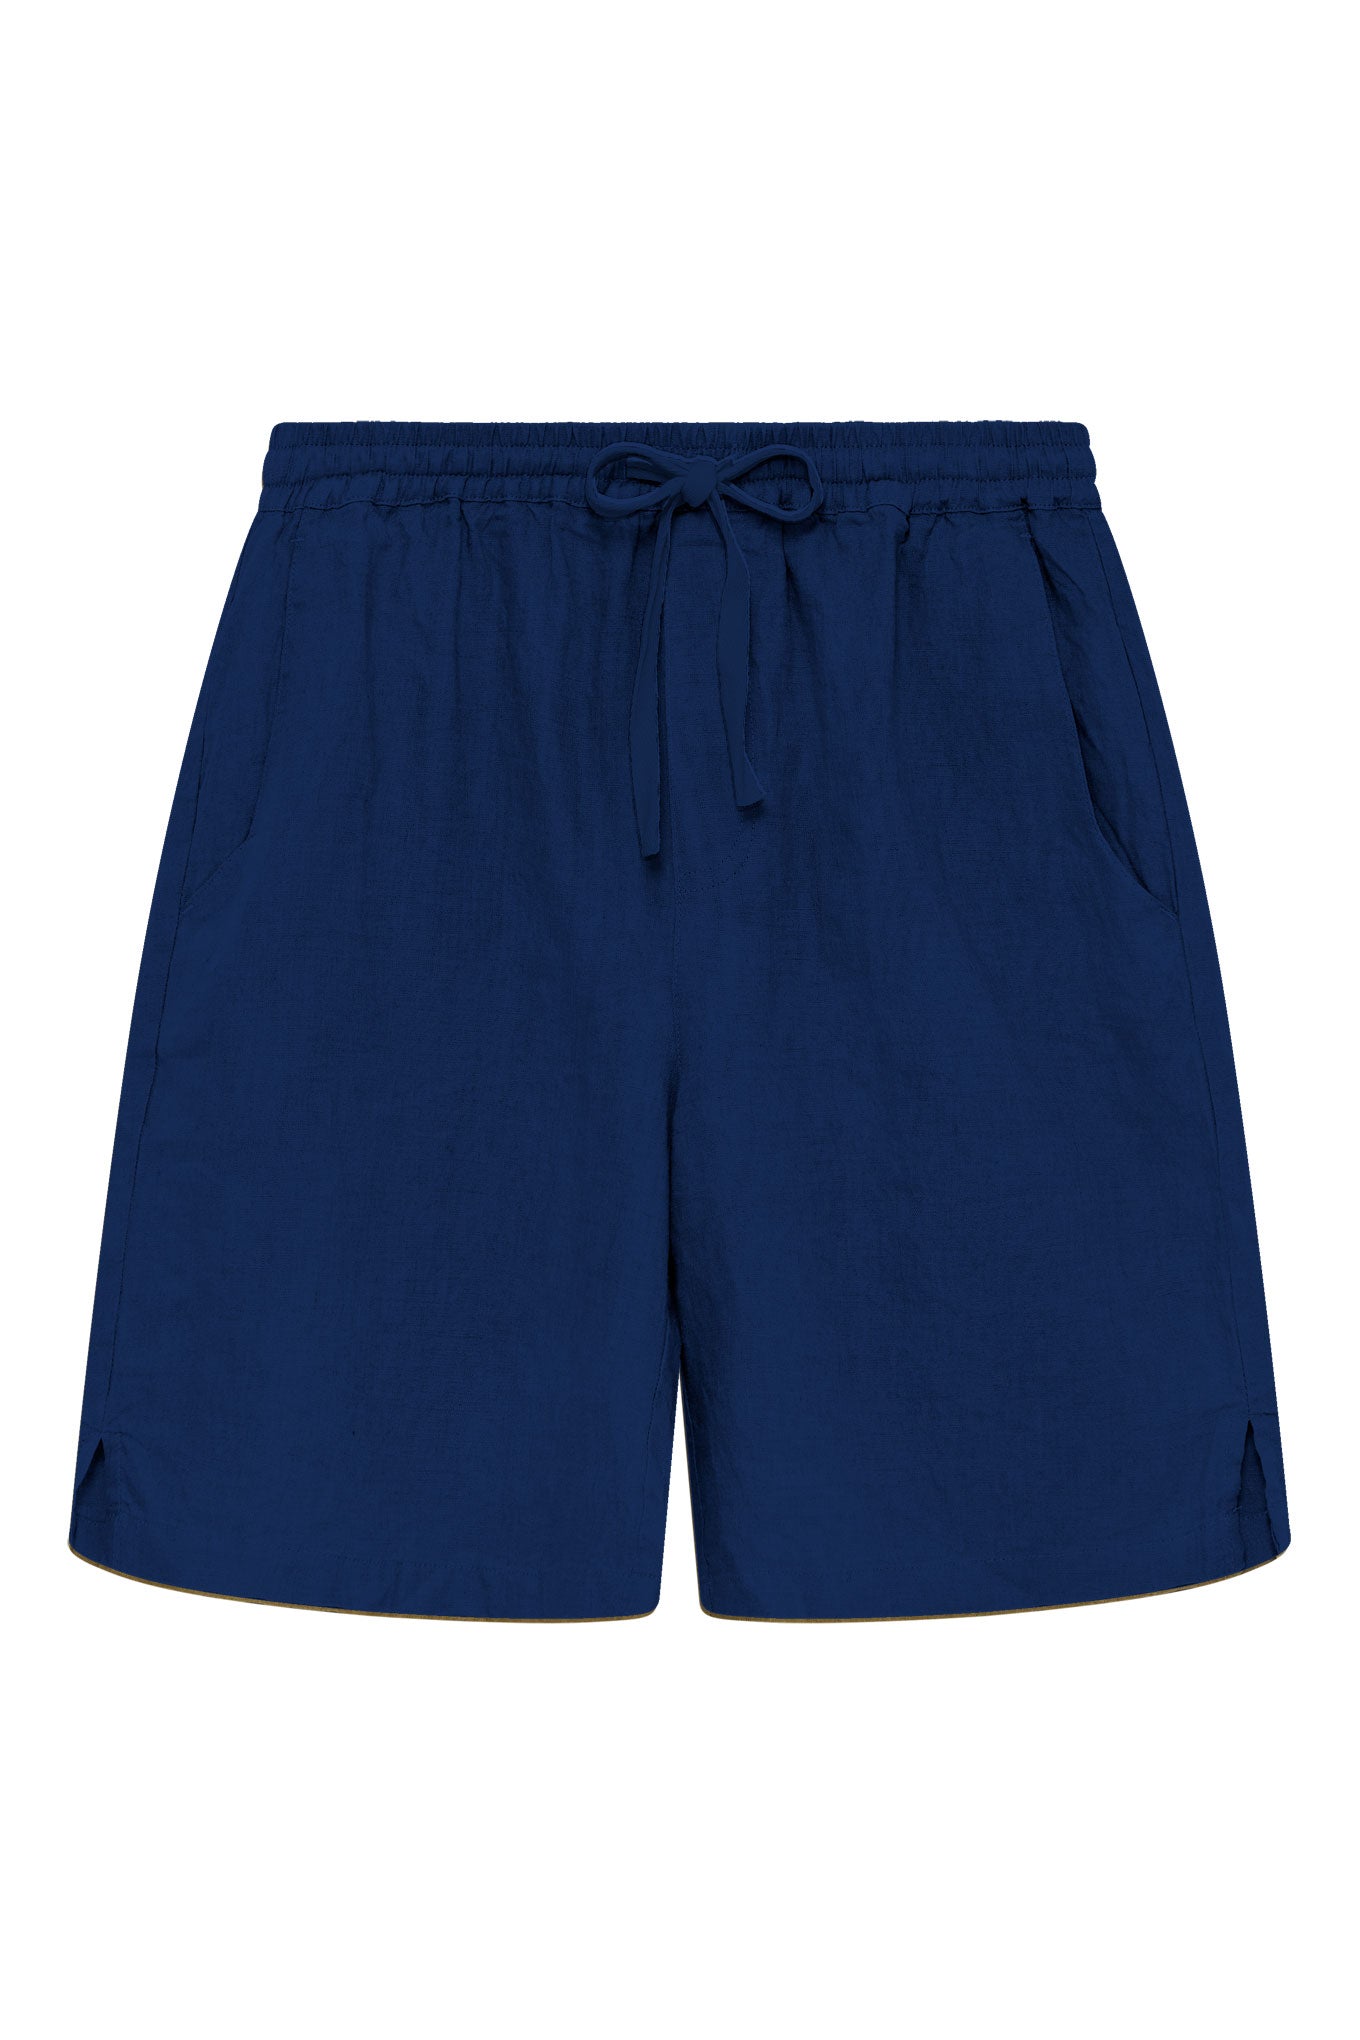 Blaue kurze Hosen Jerry aus 100% Leinen von Komodo